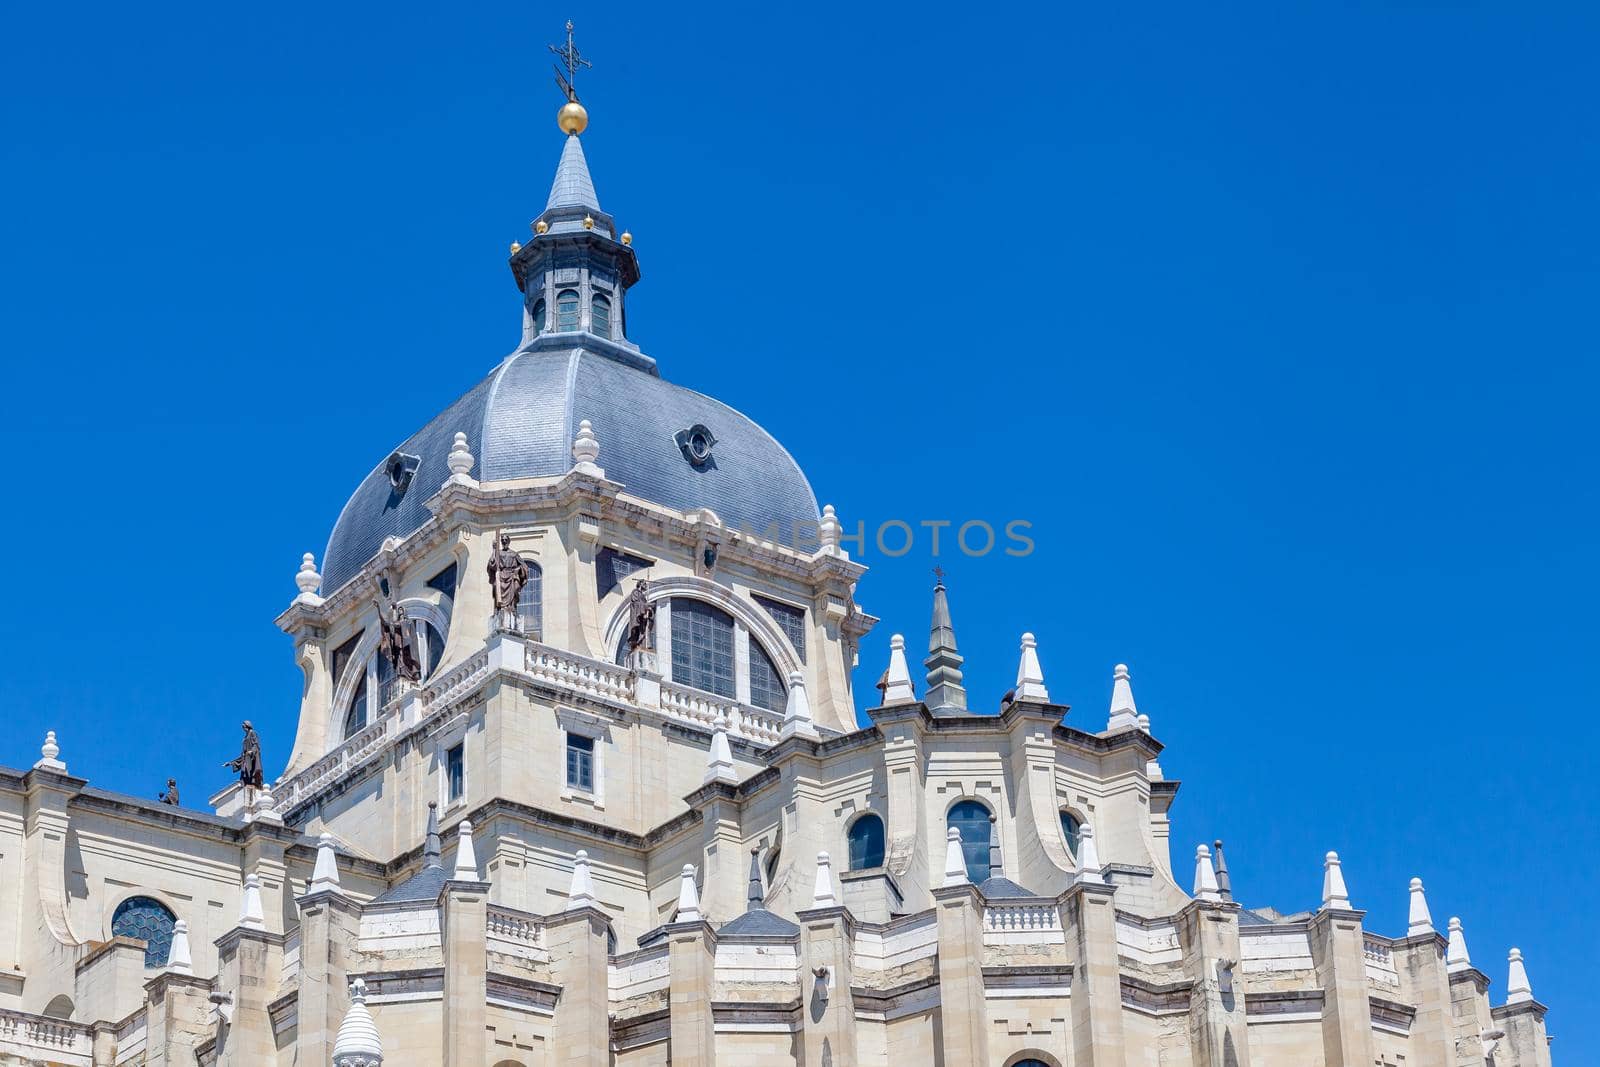 Cathedral Santa Maria la Real de La Almudena, Madrid by Goodday